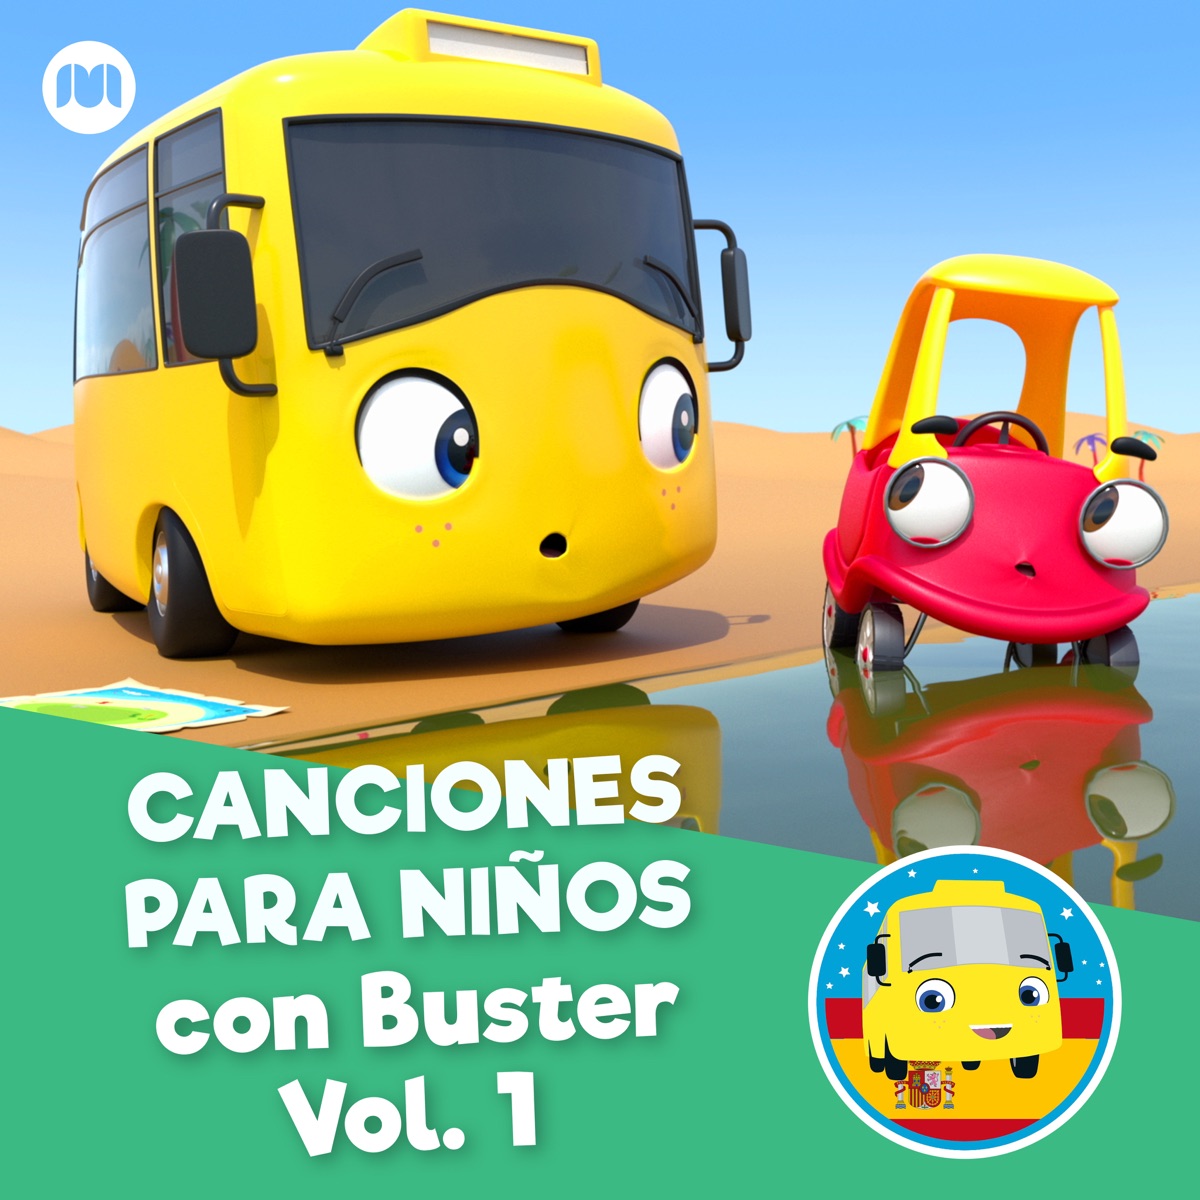 Canciones para Niños Con Buster, Vol. 1 by Little Baby Bum en Español & Go  Buster en Español on Apple Music